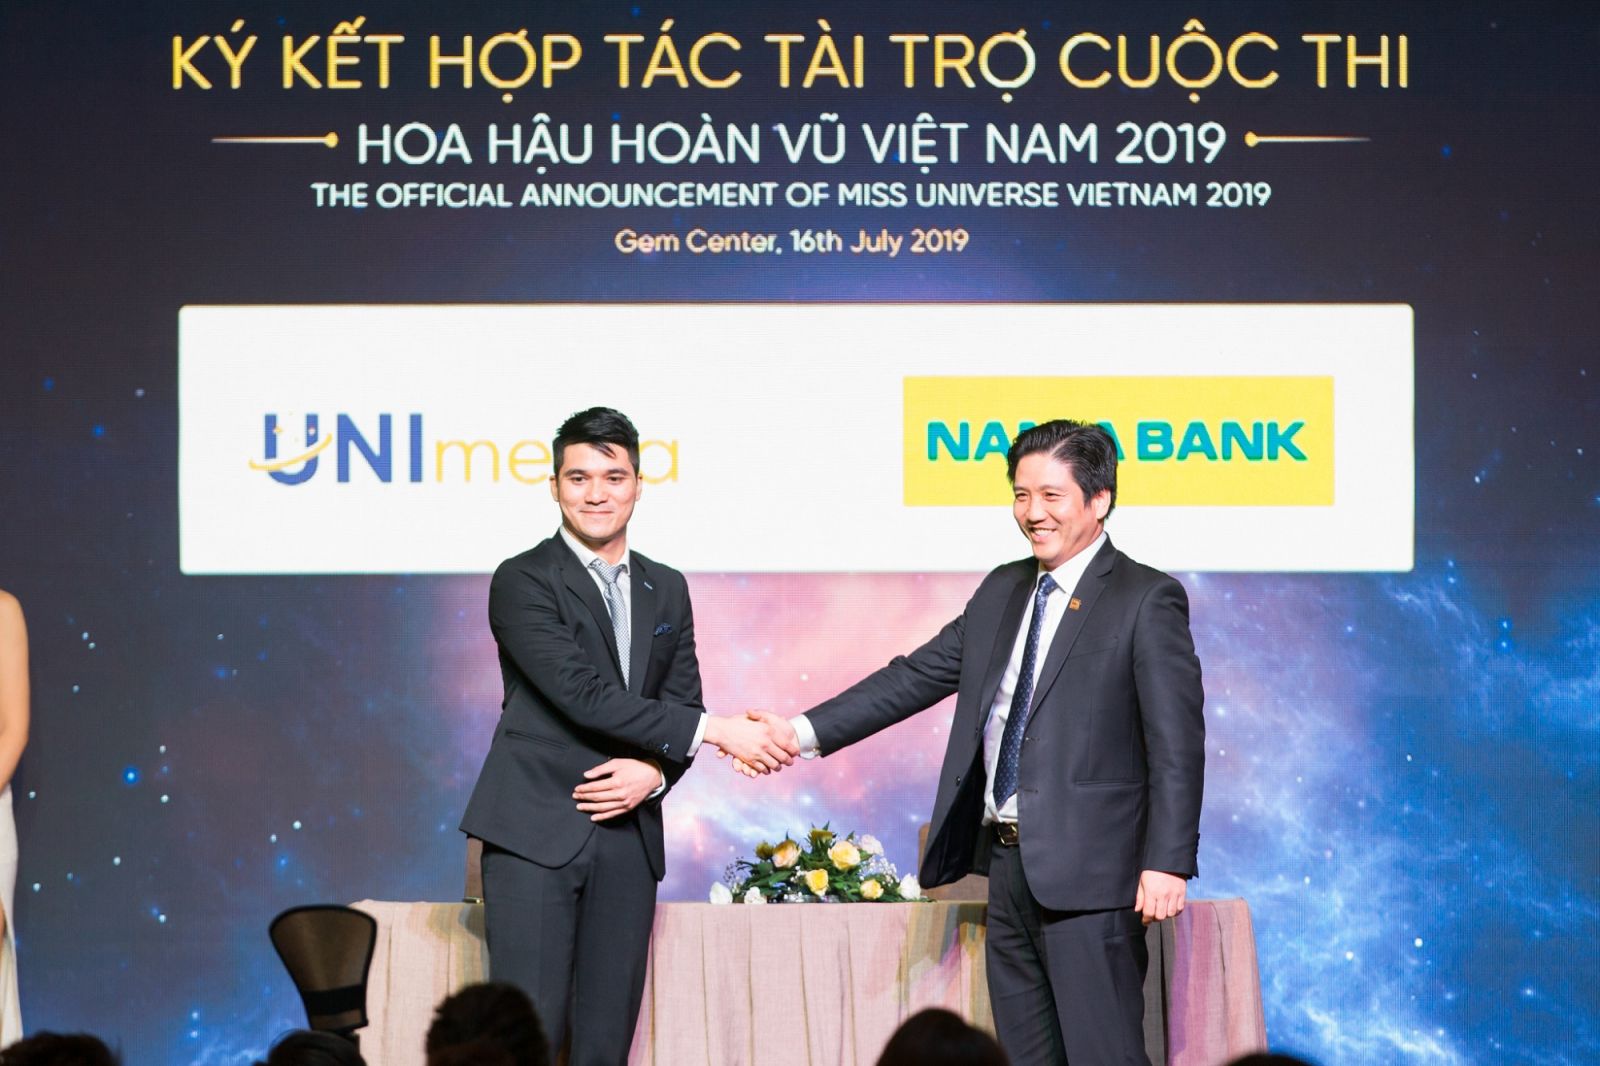 Đại diện Nam A Bank – ông Trần Khải Hoàn, Phó TGĐ (đứng bên phải) ký kết tài trợ cuộc thi HHHV Việt Nam 2019.